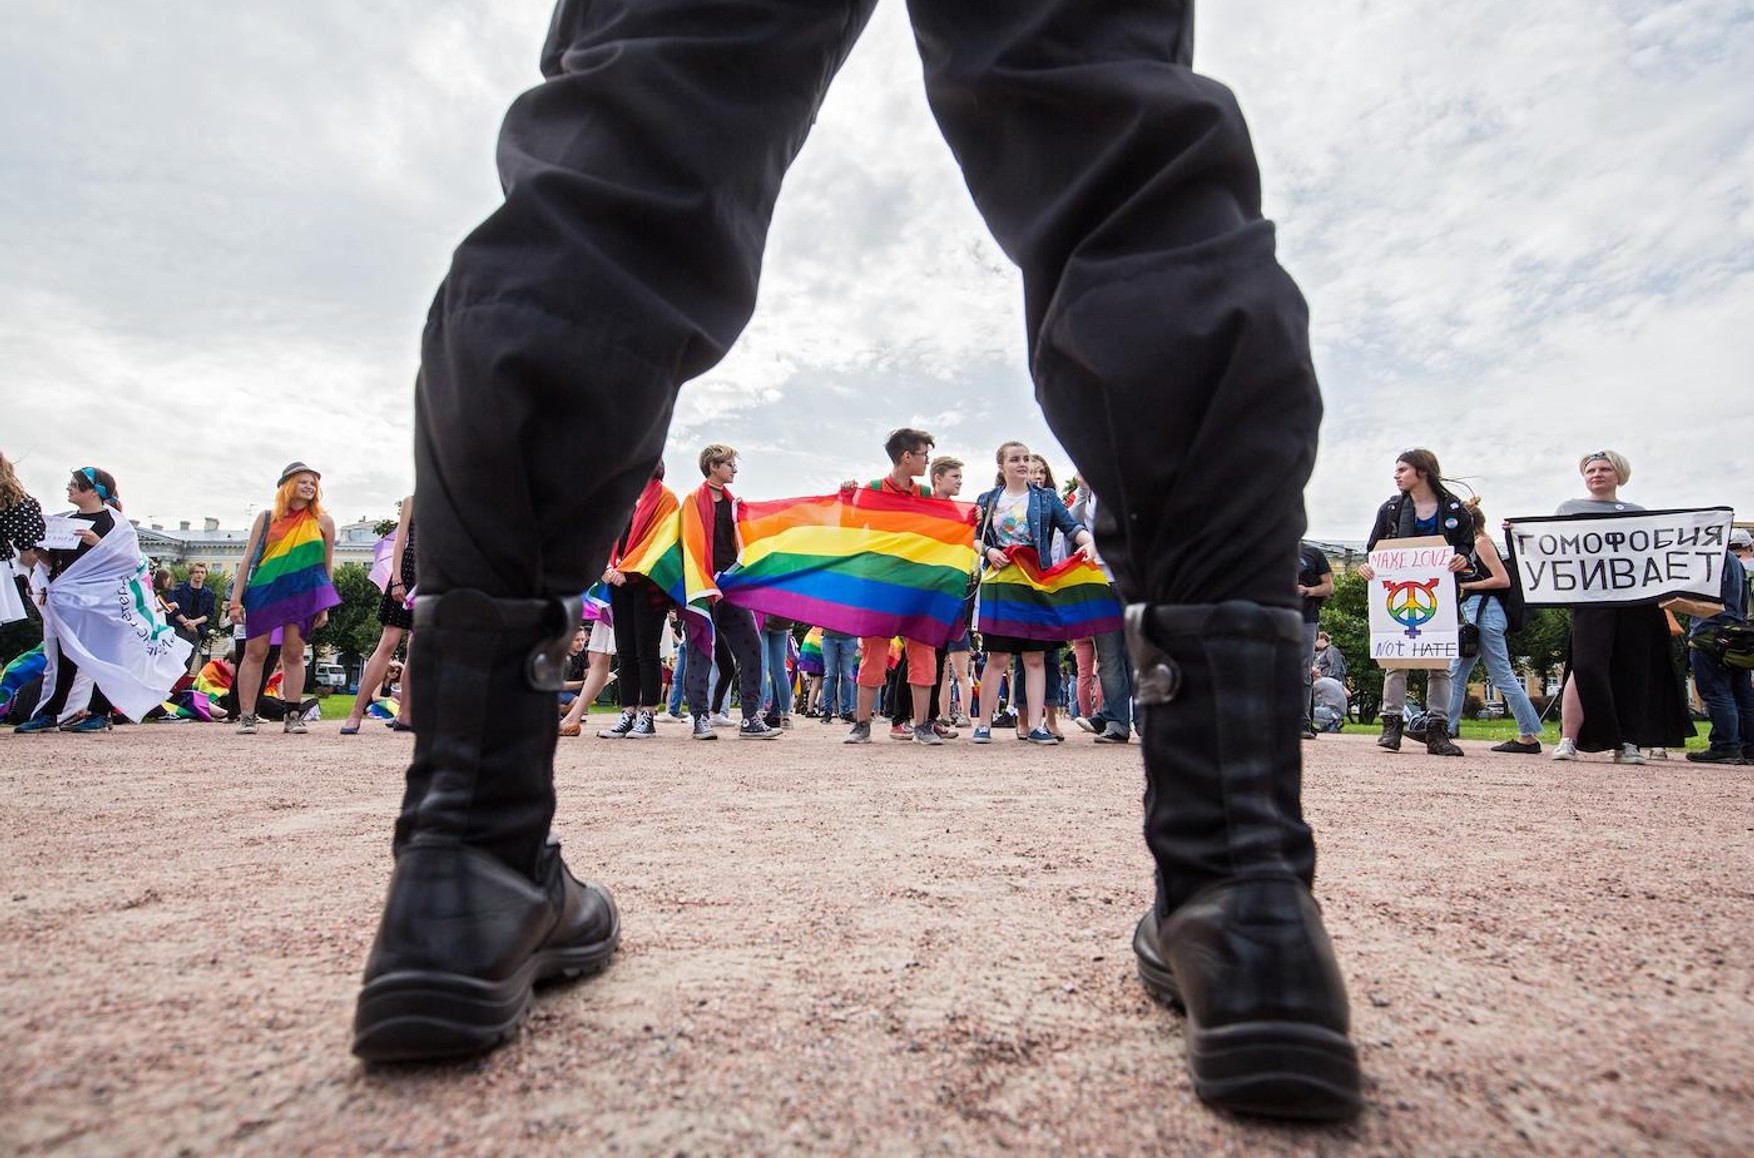 Baza: гей-паре из Москвы грозит до 20 лет лишения свободы. Соседка утверждает, что их секс увидели дети